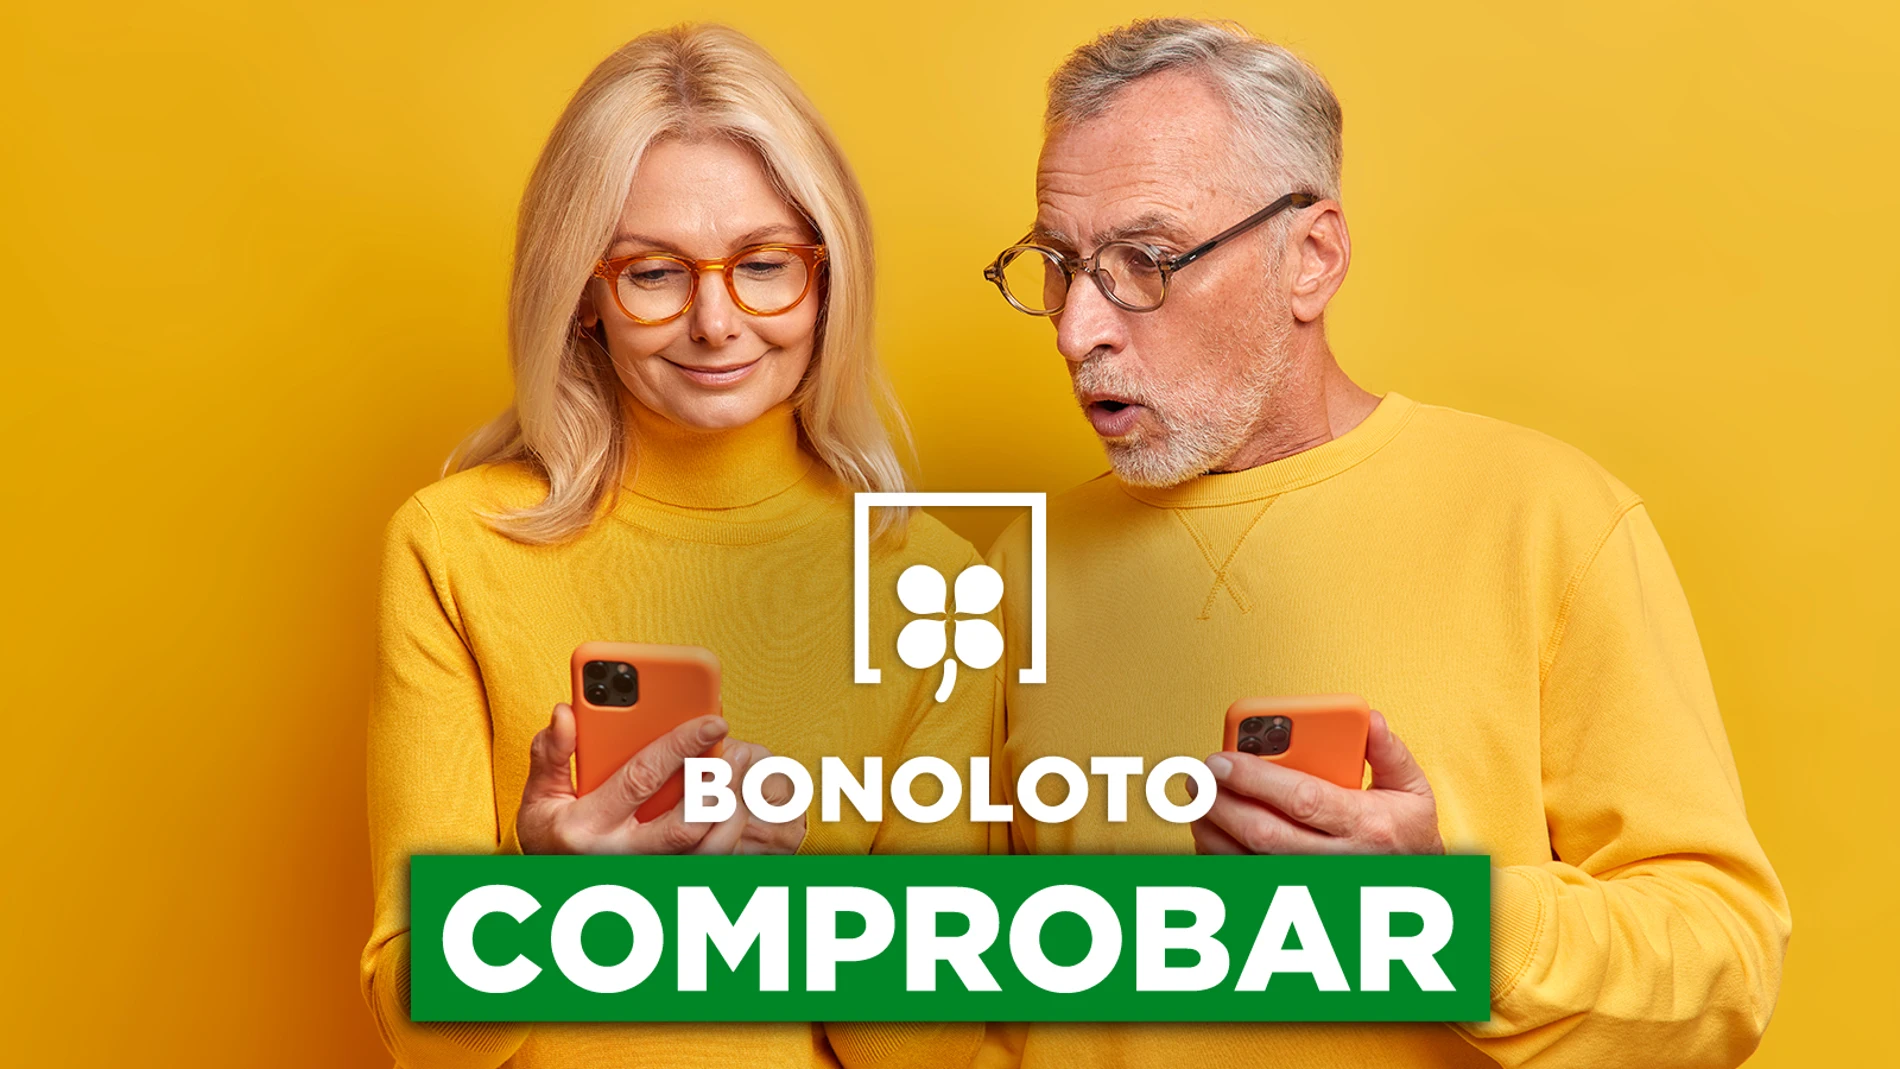 Bonoloto: comprobar hoy, viernes 22 de abril de 2022